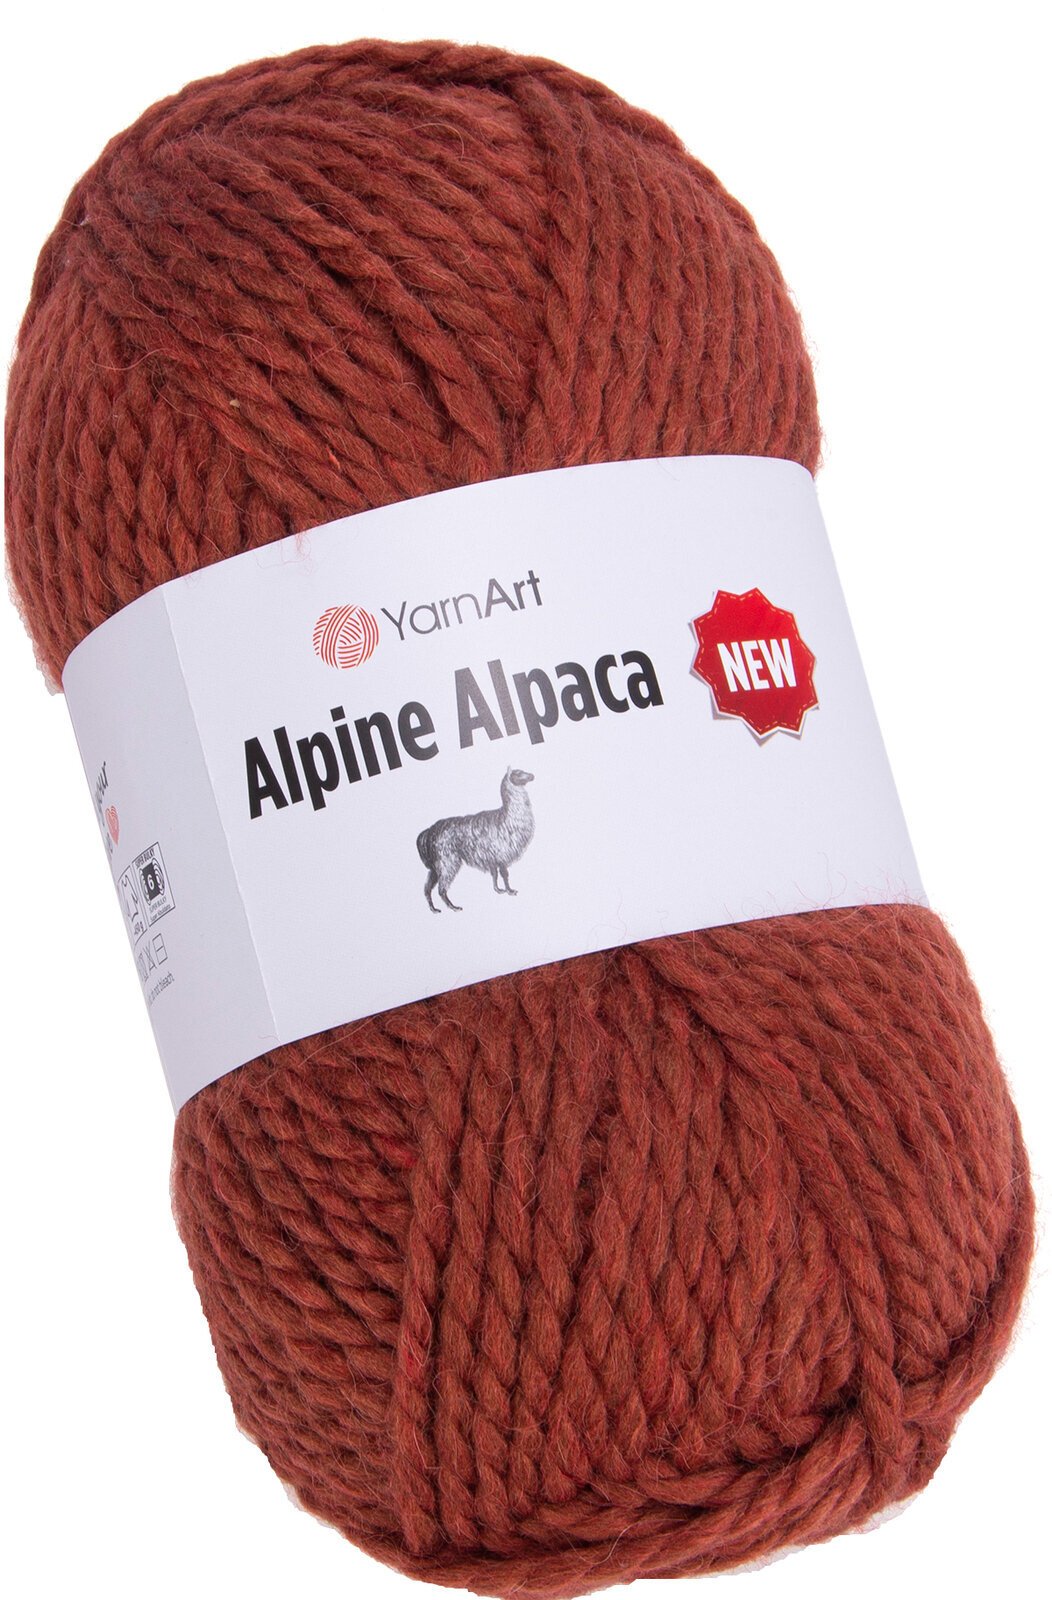 Νήμα Πλεξίματος Yarn Art Alpine Alpaca New 1452 Νήμα Πλεξίματος